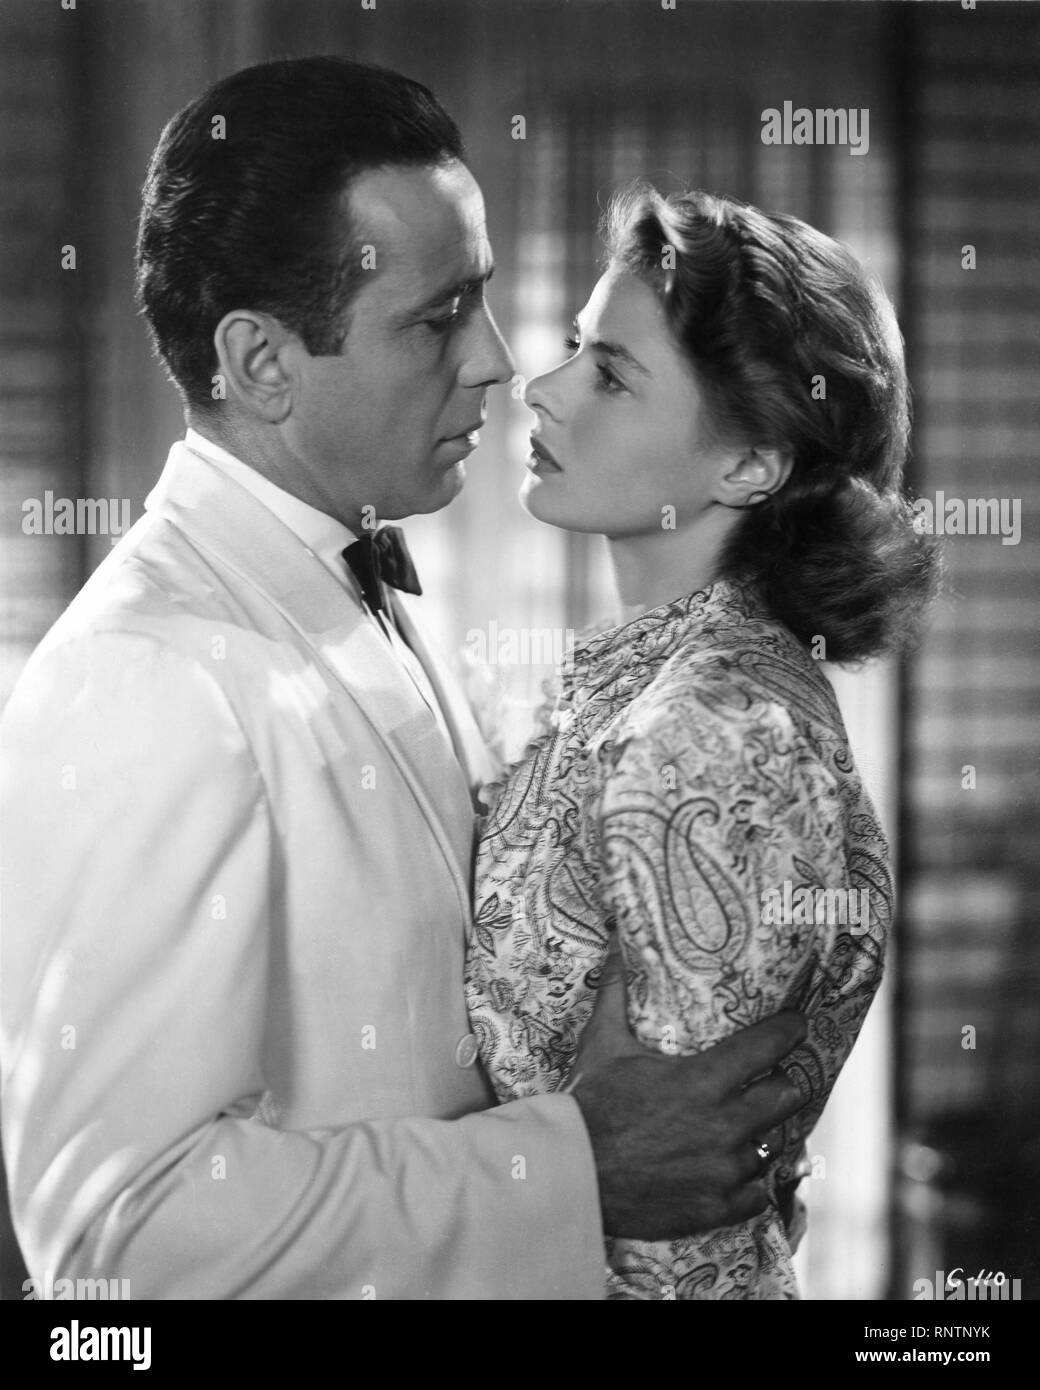 24x30 cm Photographie Noir et Blanc de Humphrey Bogart dans le Film Casablanca 